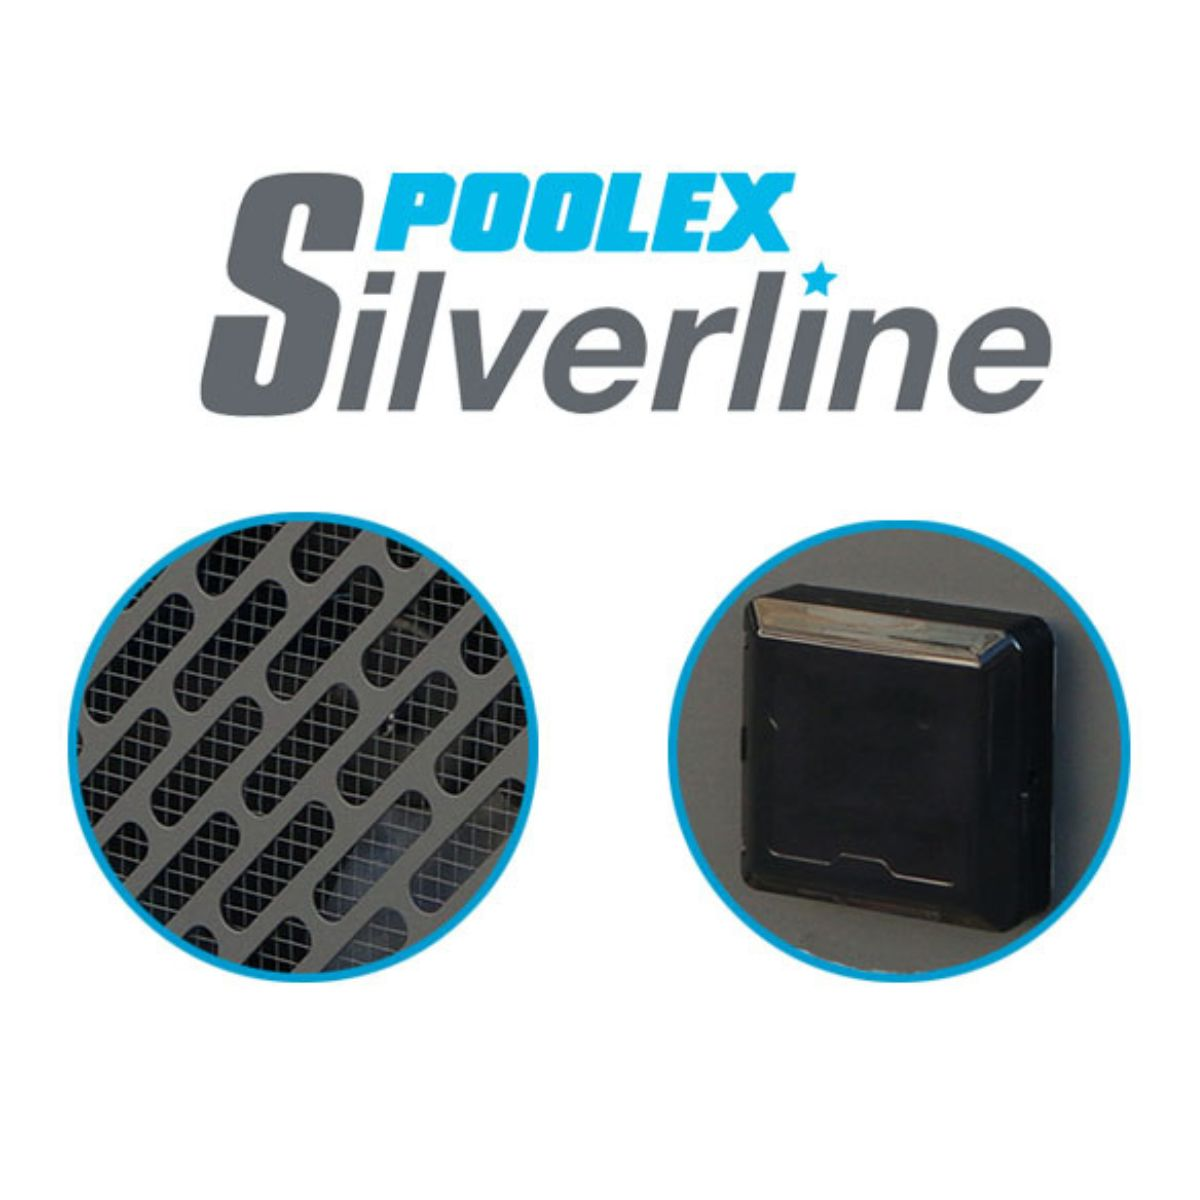 Schwimmbadpumpe 55 Silverline POOLEX